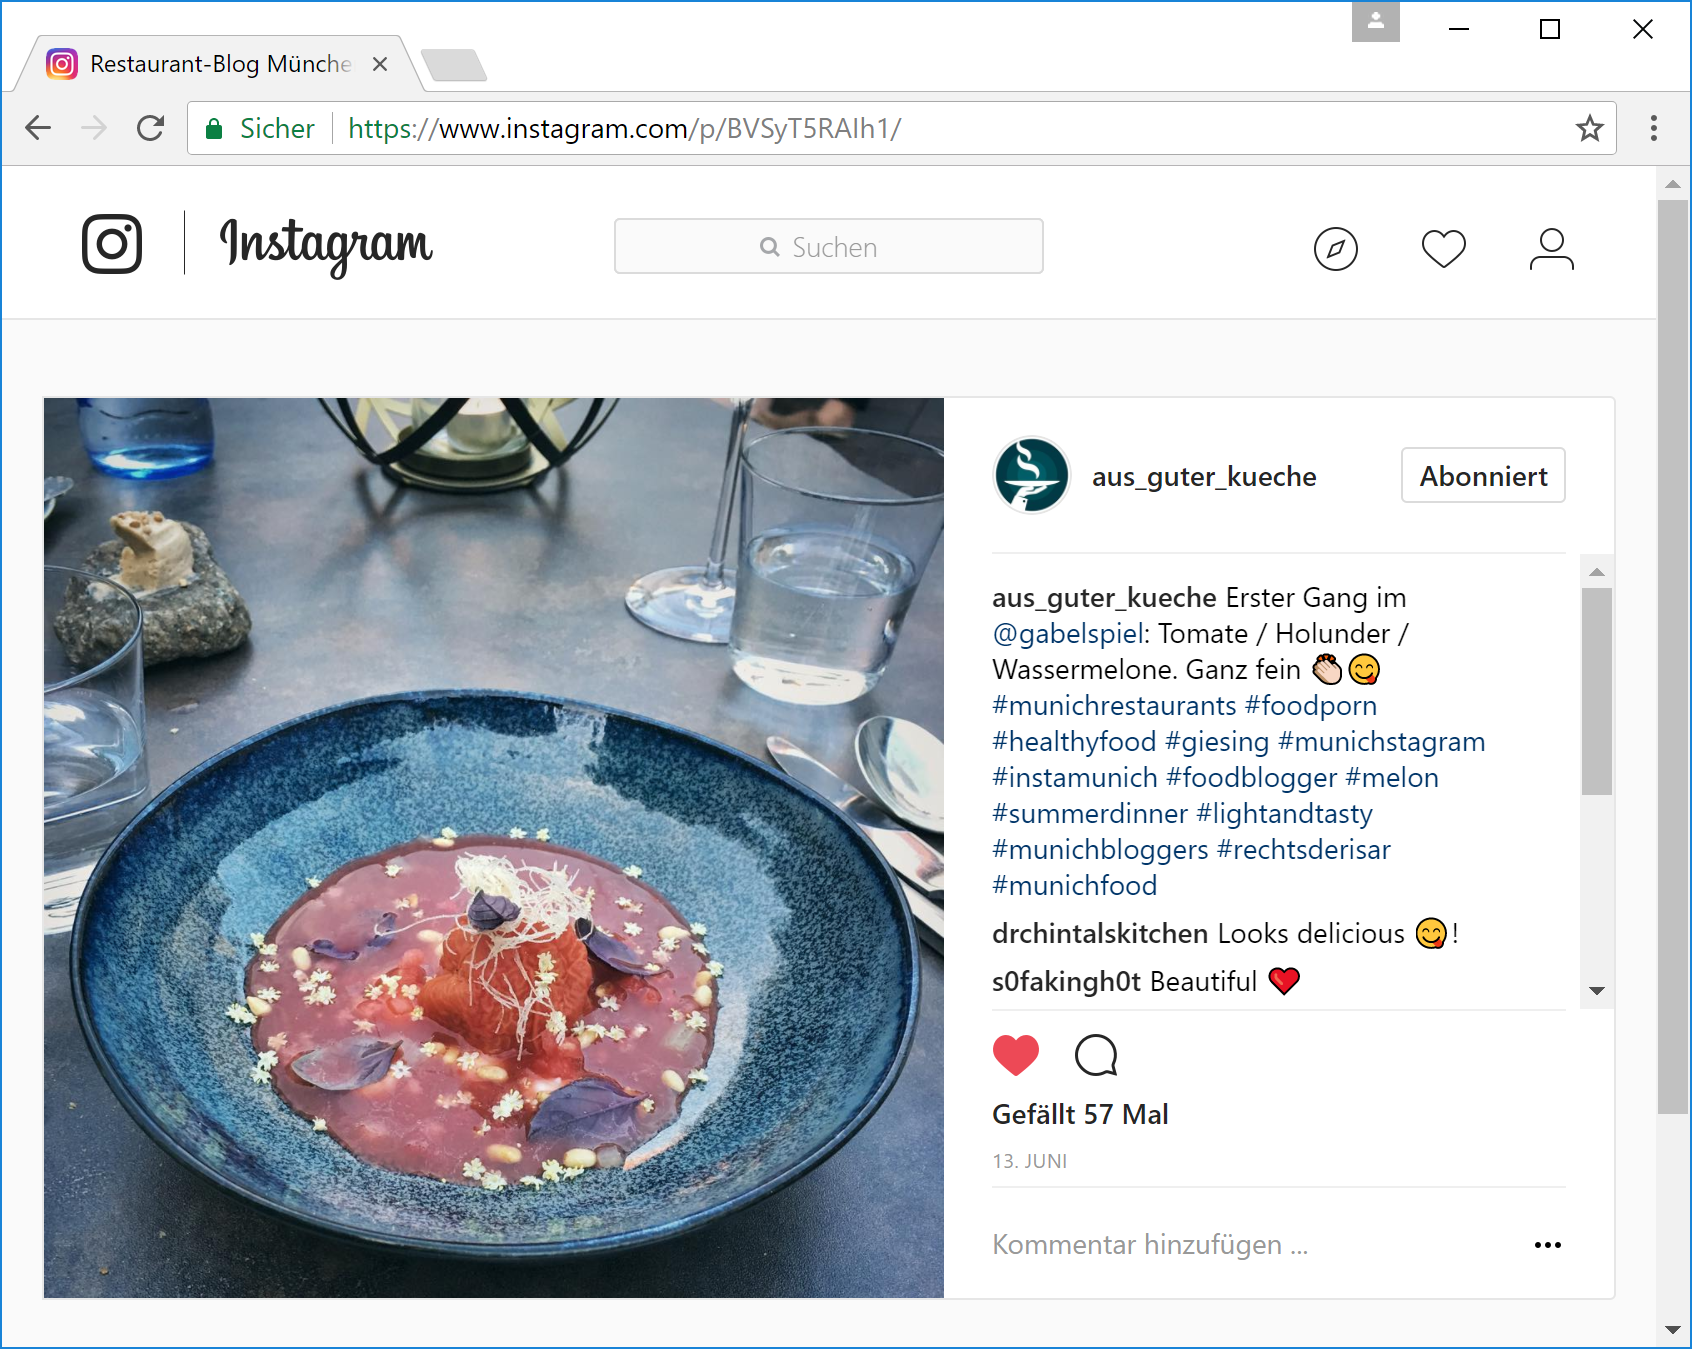 Instagram Aus guter Küche